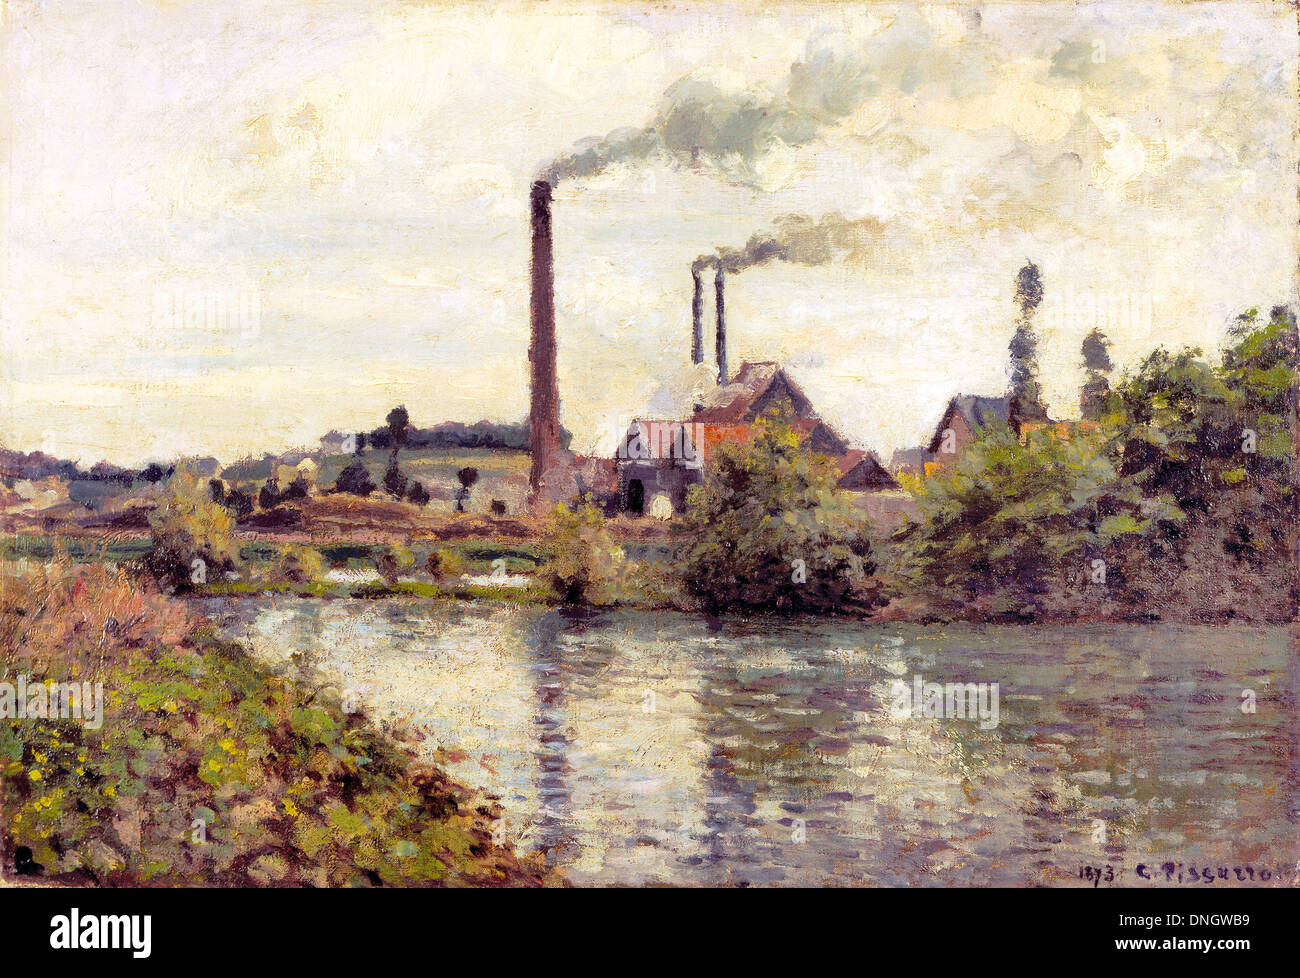 Camille Pissarro, l'usine à Pontoise 1873 Huile sur toile. Musée d'Israël, Jérusalem. Banque D'Images